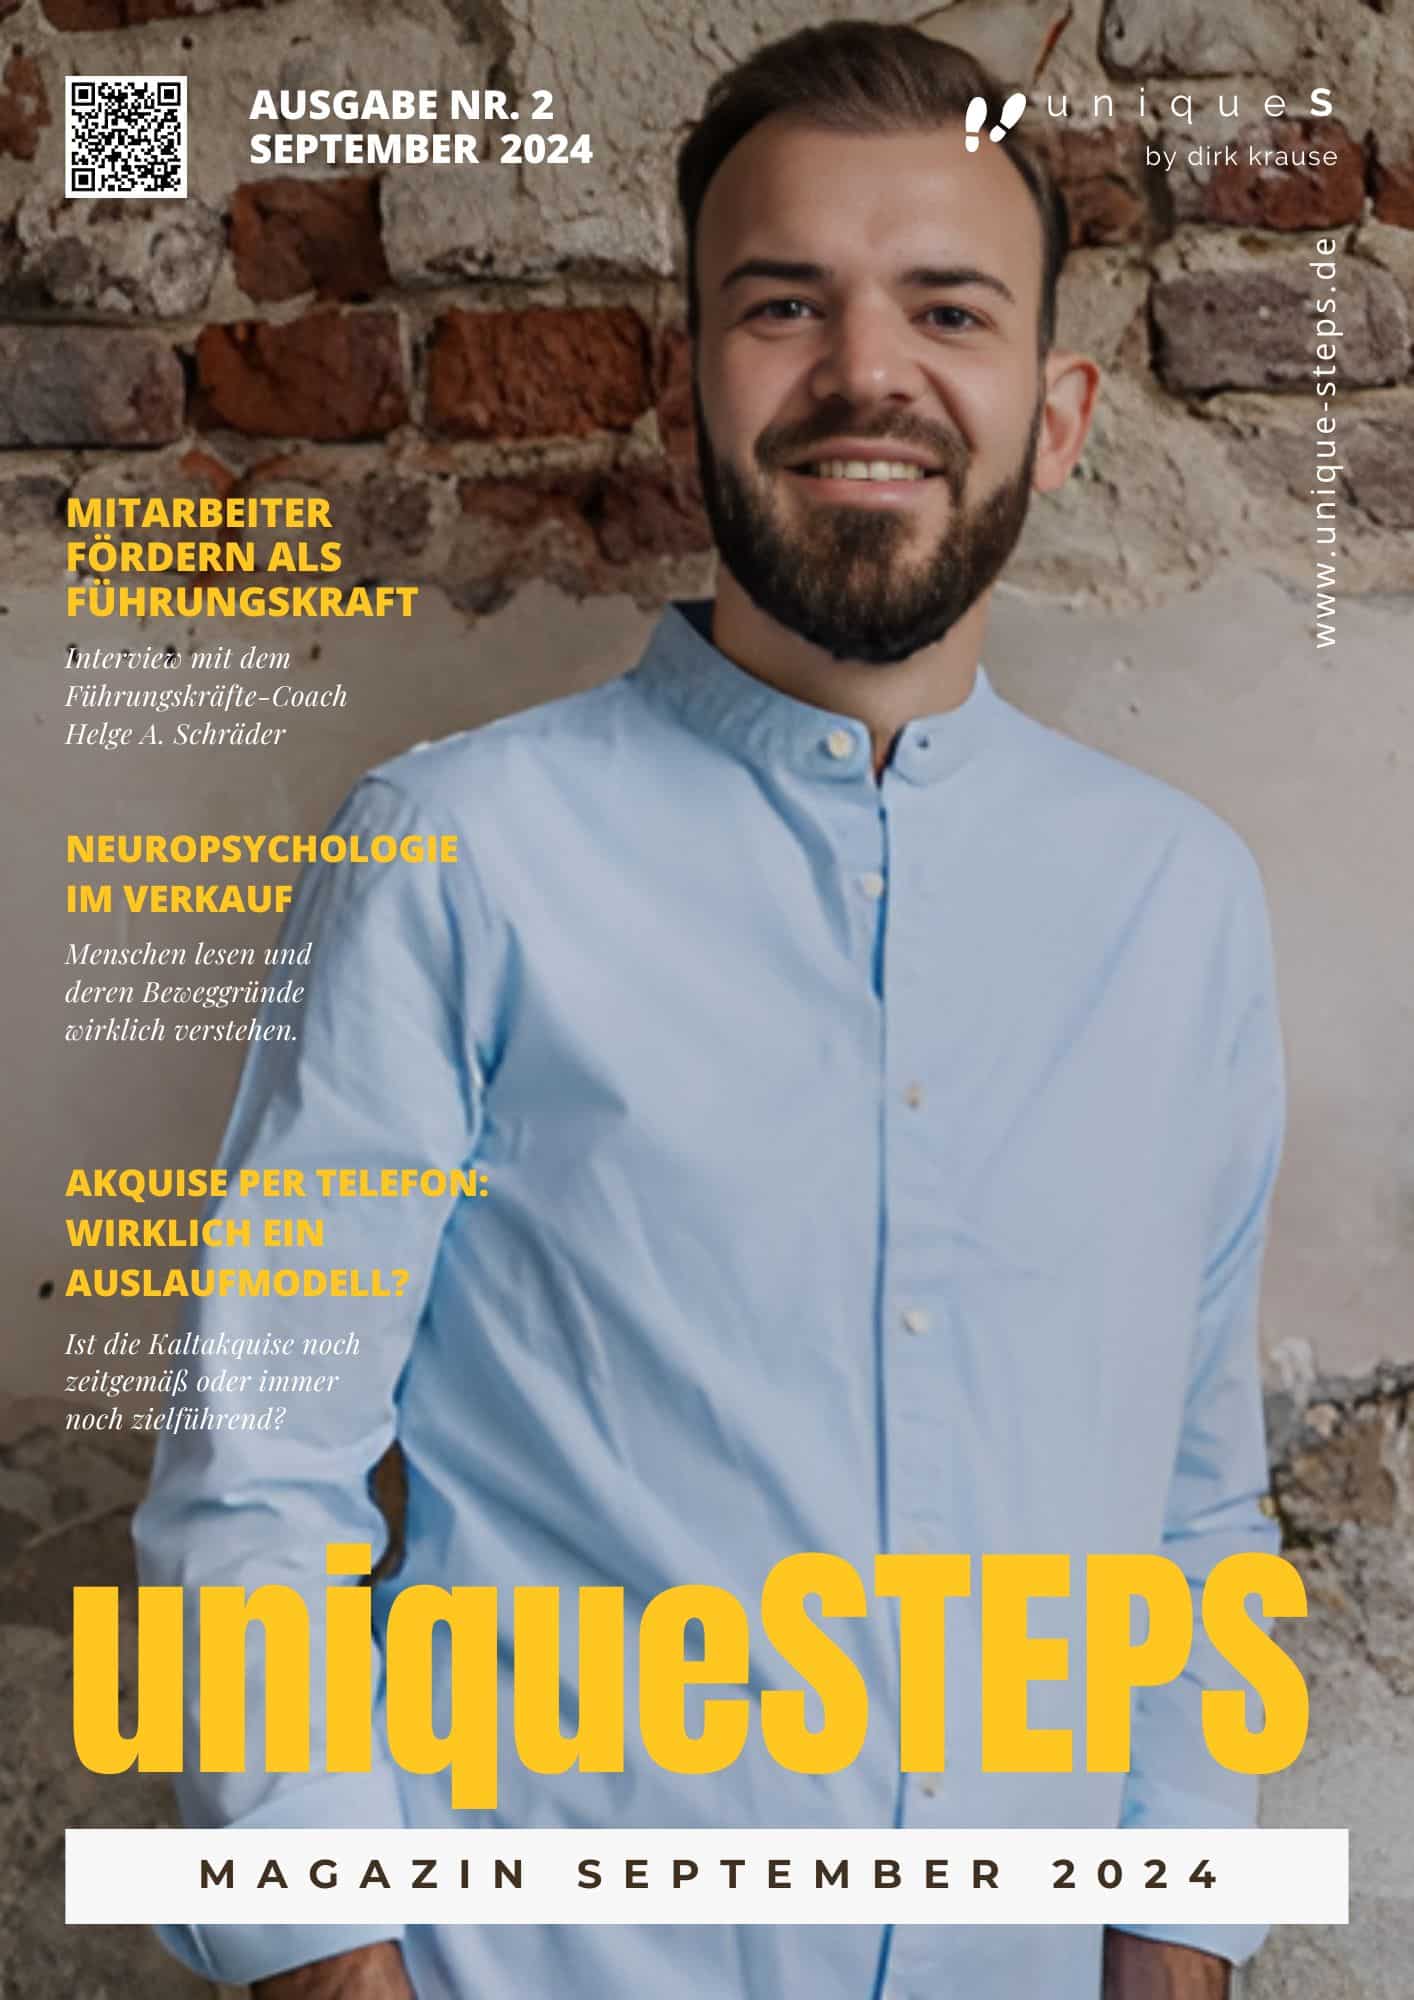 uniqueS Magazin für Vertrieb, Marketing, Kommunikation und persönliche Entwicklung